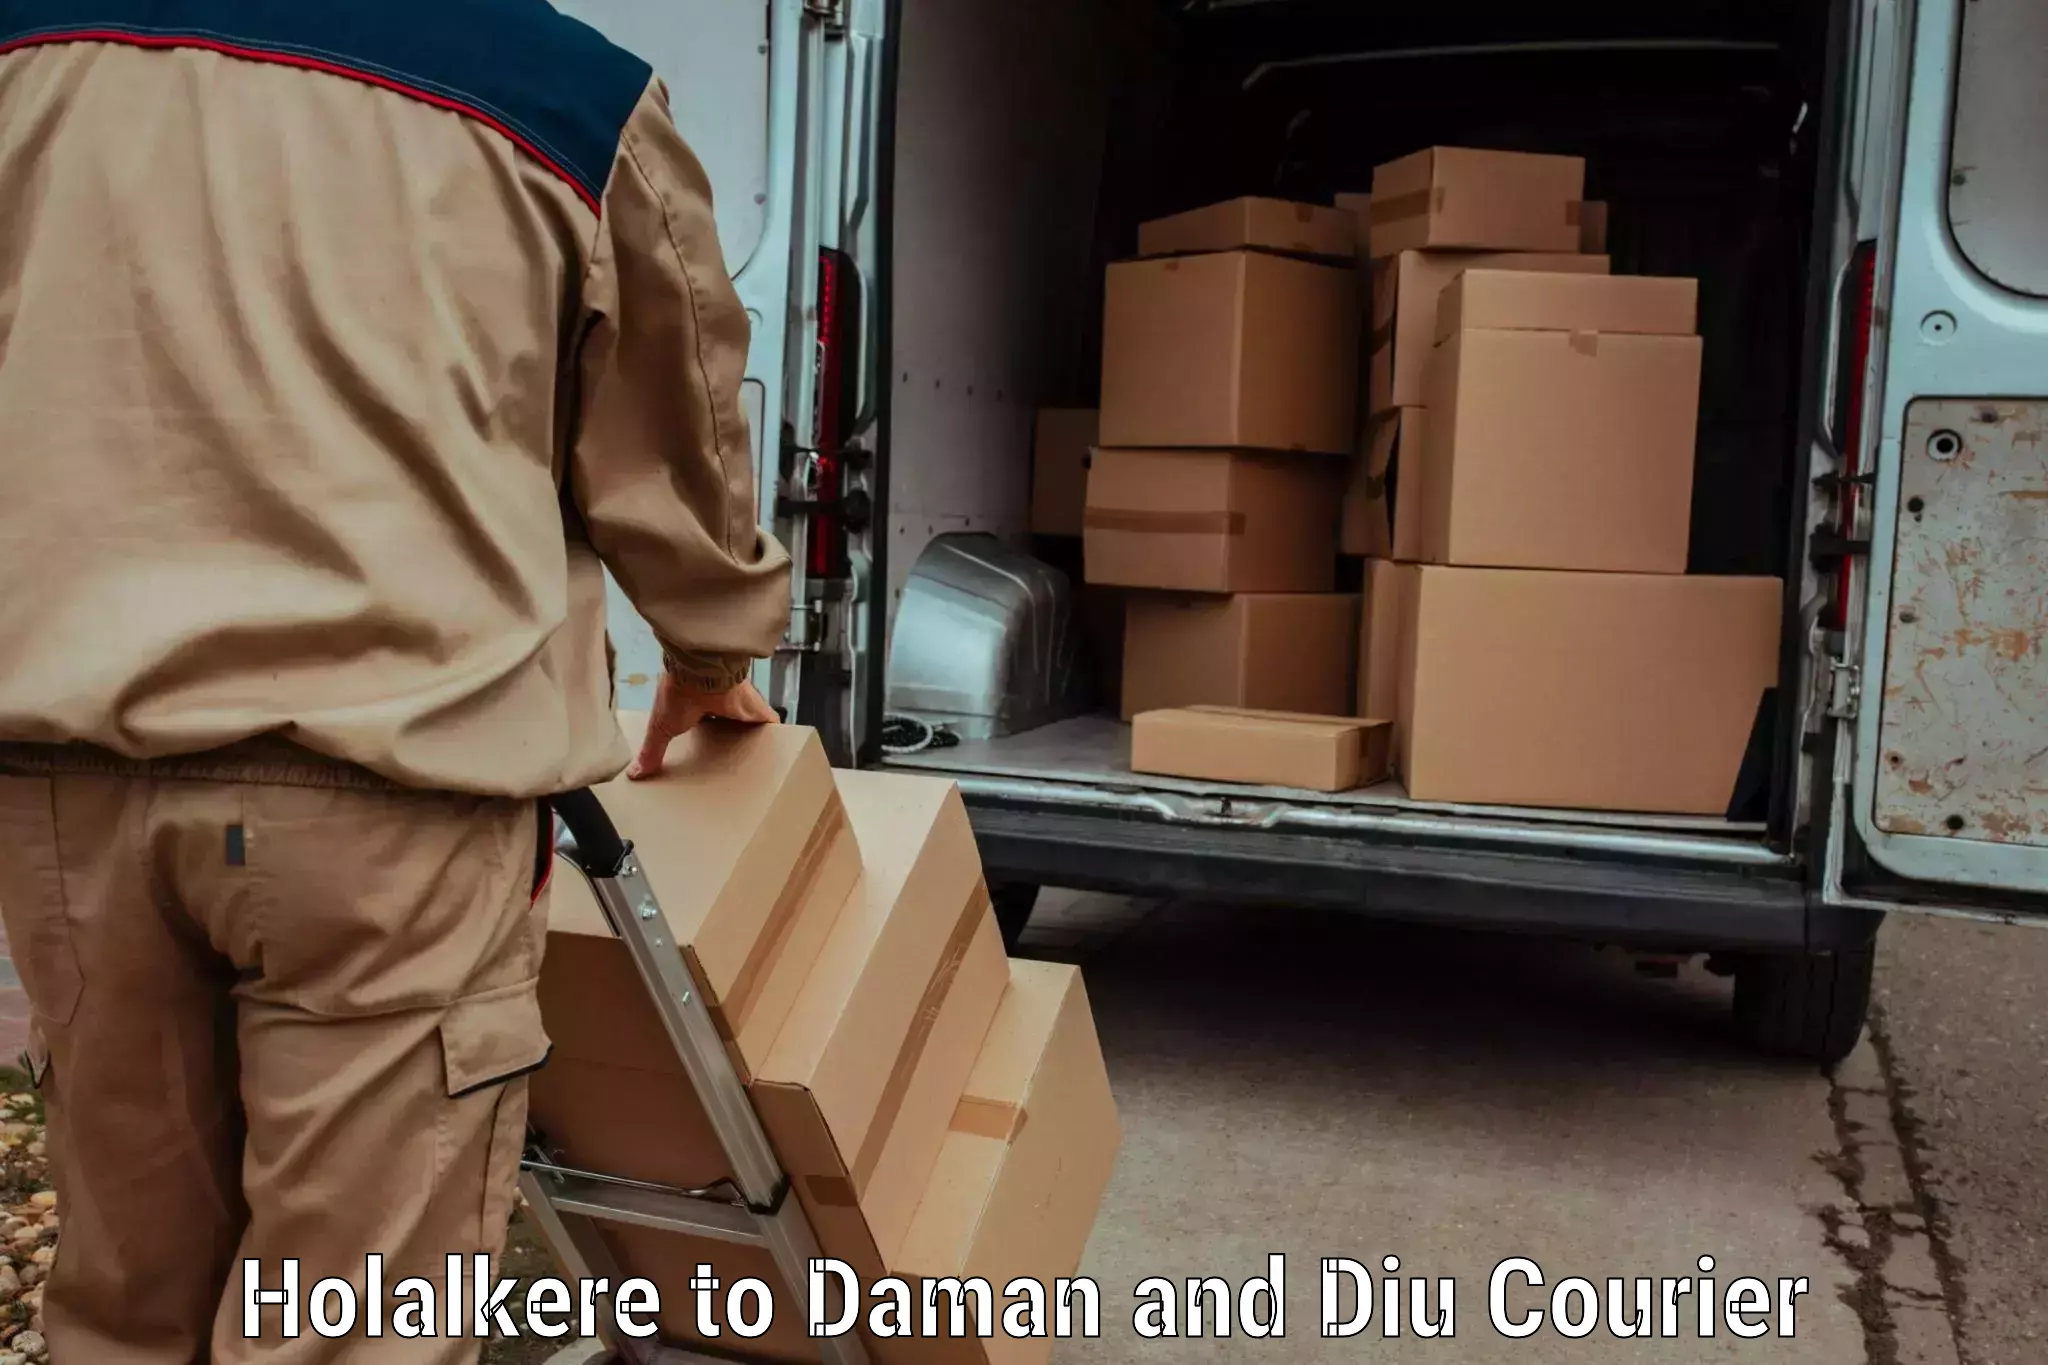 Cargo courier service Holalkere to Diu